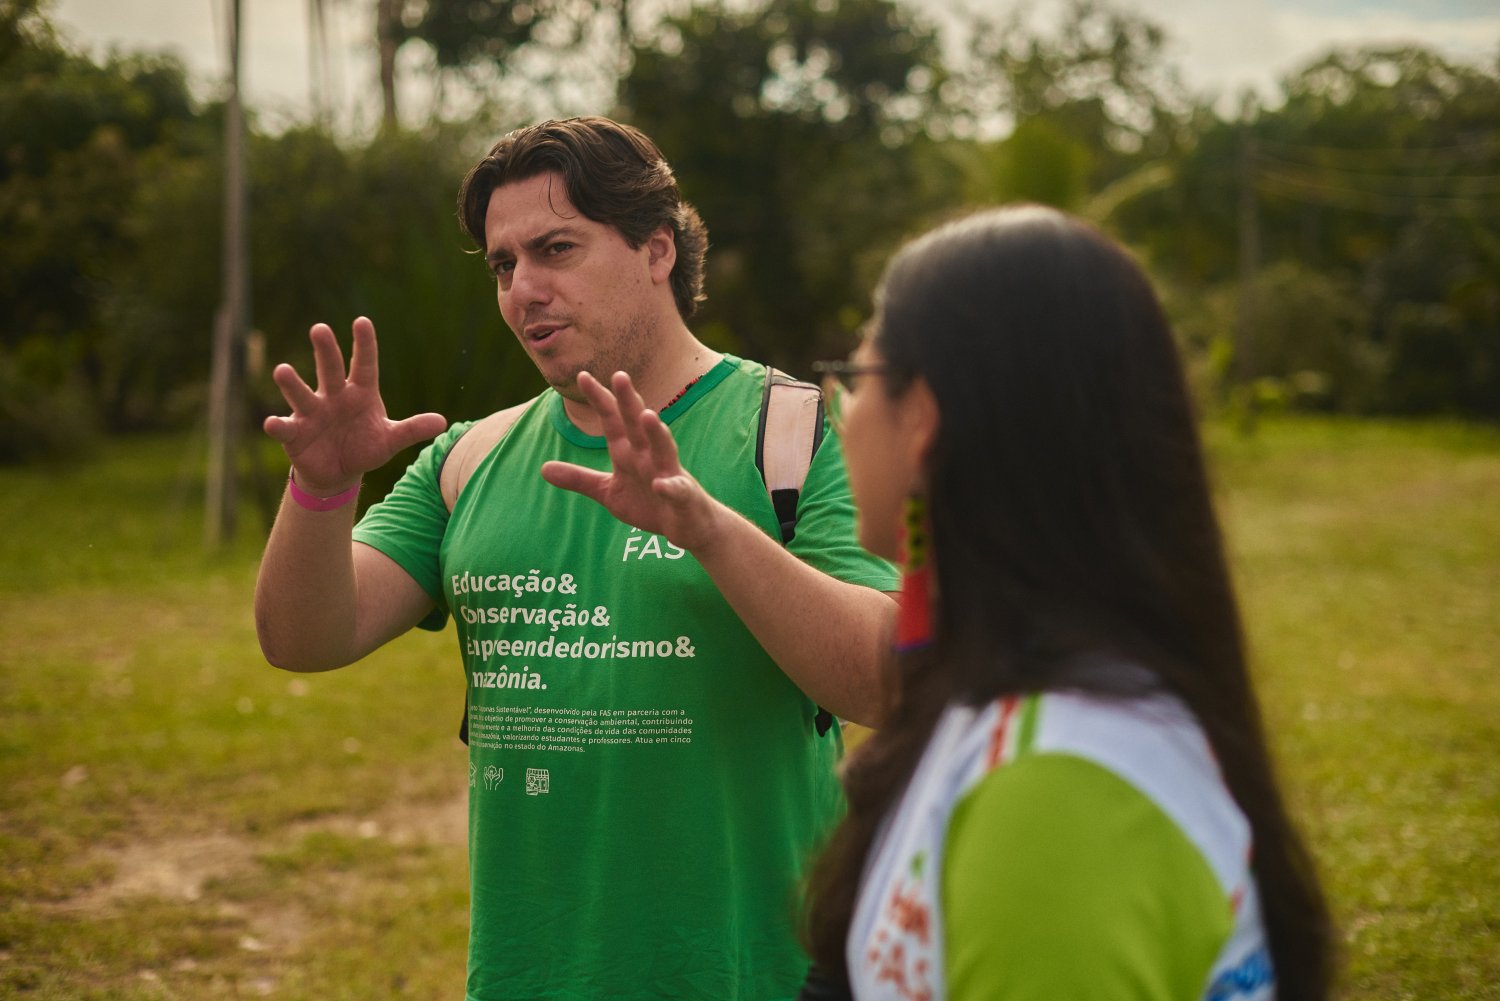 Solar Hub Evento 2023 no Amazonas 01.06.2023 Intel Dell FAS Pongelupe Filmes RDF 6312 Padrao Solar Hub: tecnologia é chave para desenvolvimento sustentável e preservação na Amazônia